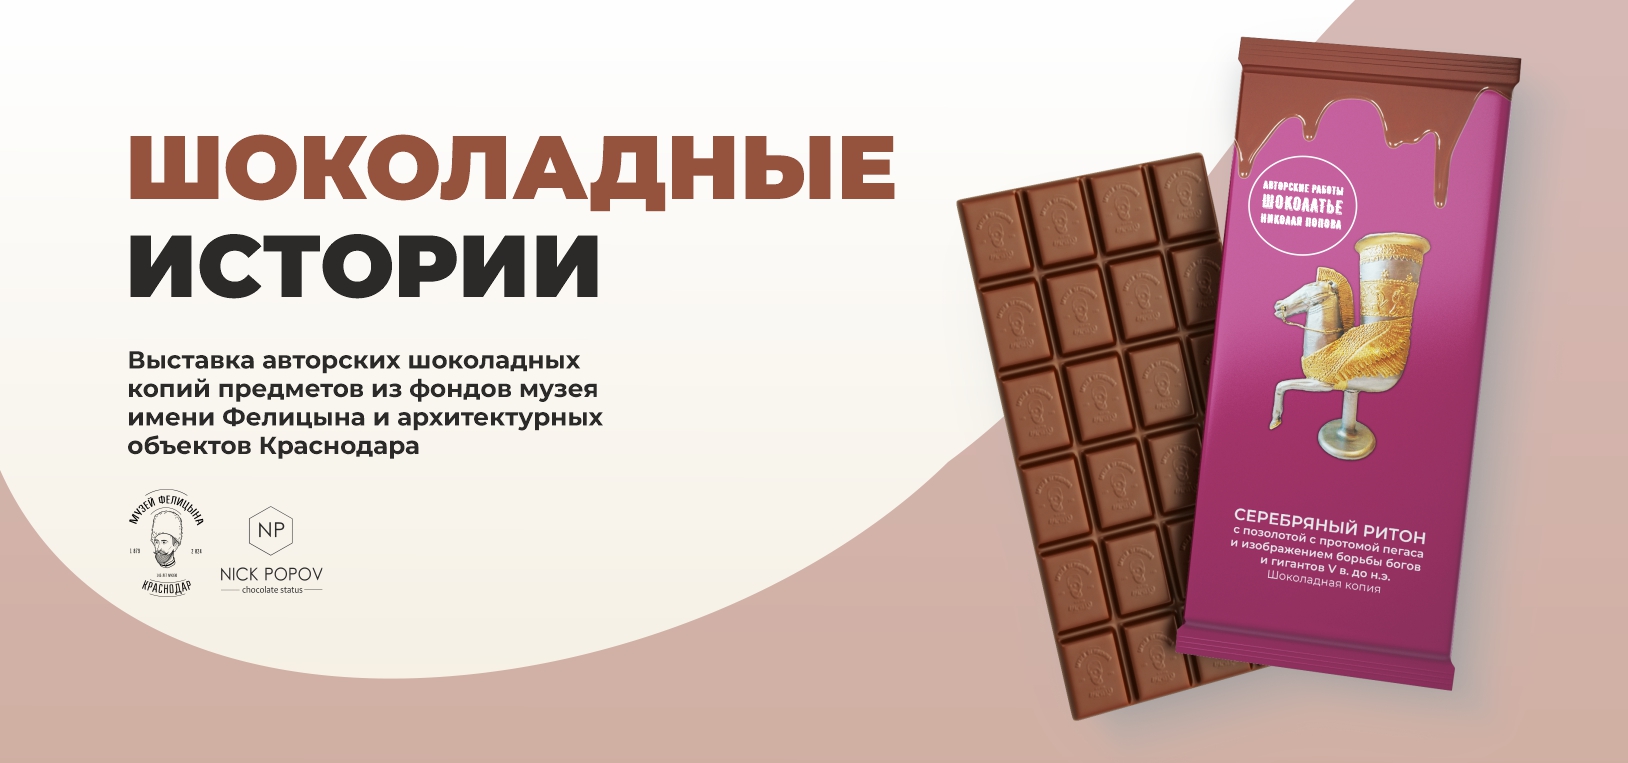 Шоколадные истории - выставка музей Фелицына Краснодар